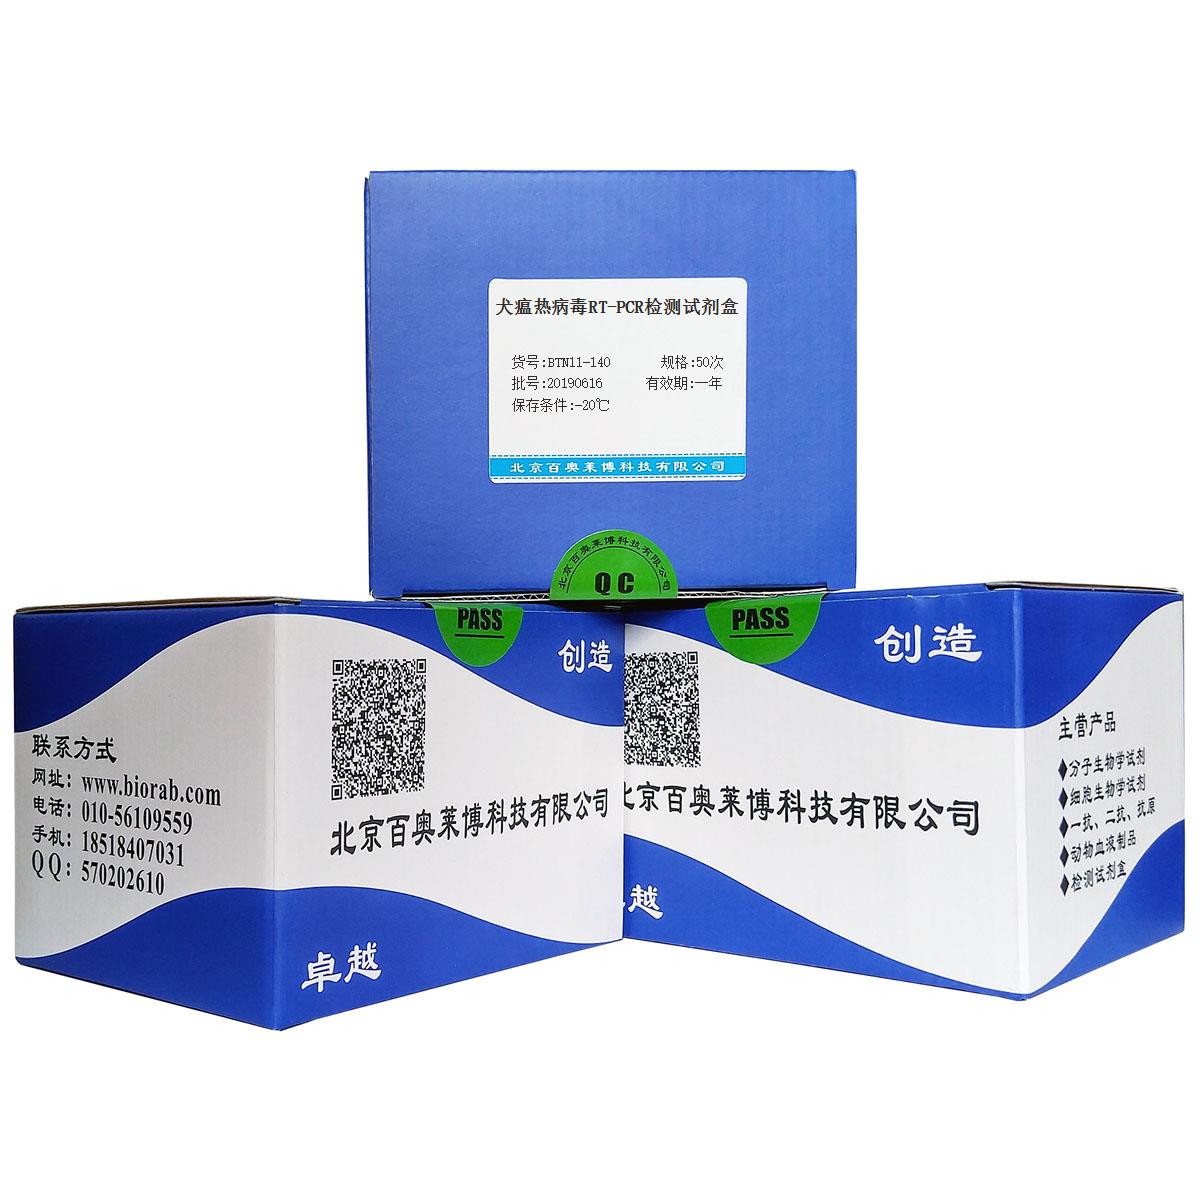 犬瘟热病毒RT-PCR检测试剂盒北京厂家